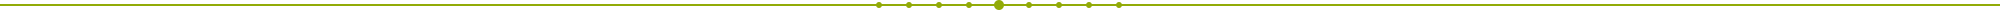 linea temporal verde usada como separador